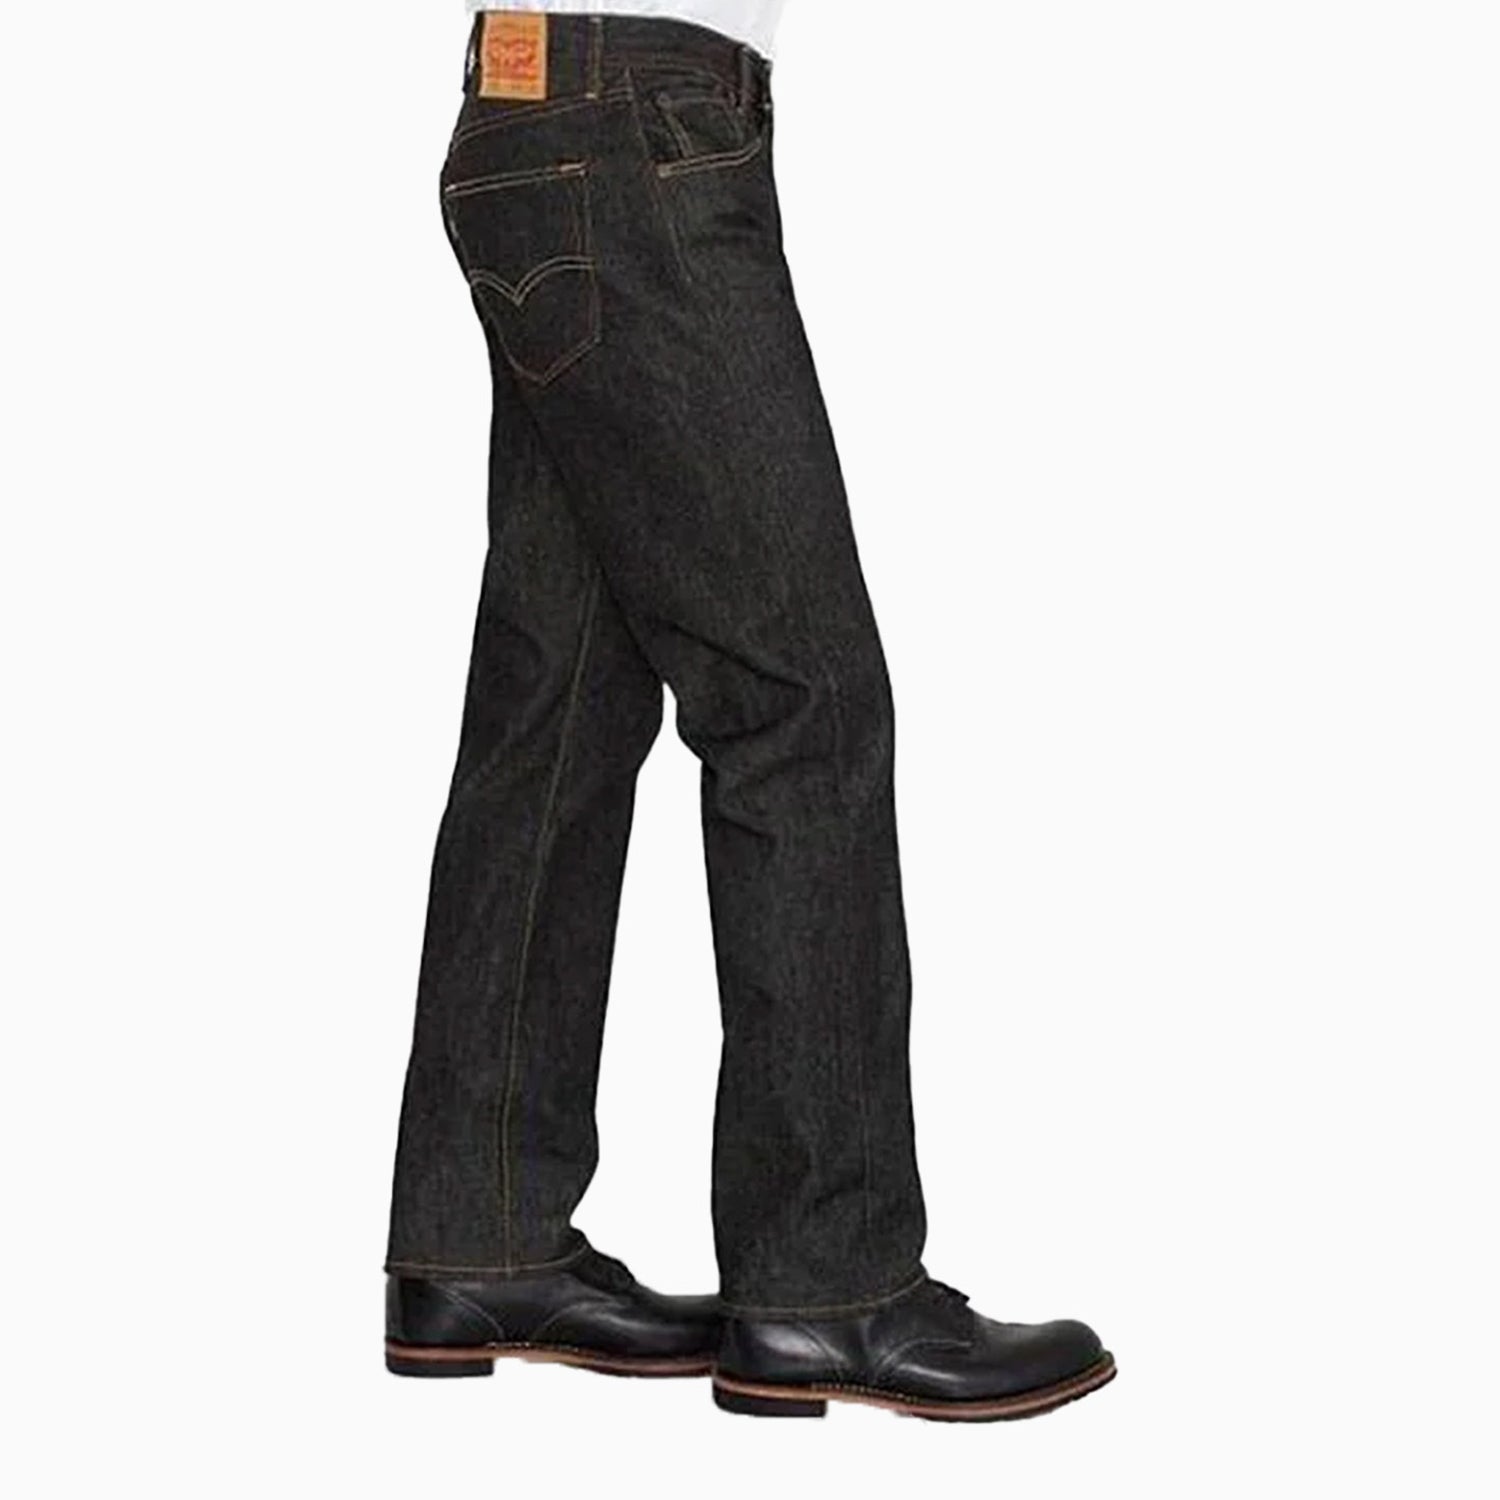 levi-s-mens-501®levis-original-shrink-to-fit-jeans-pant-00501-0226